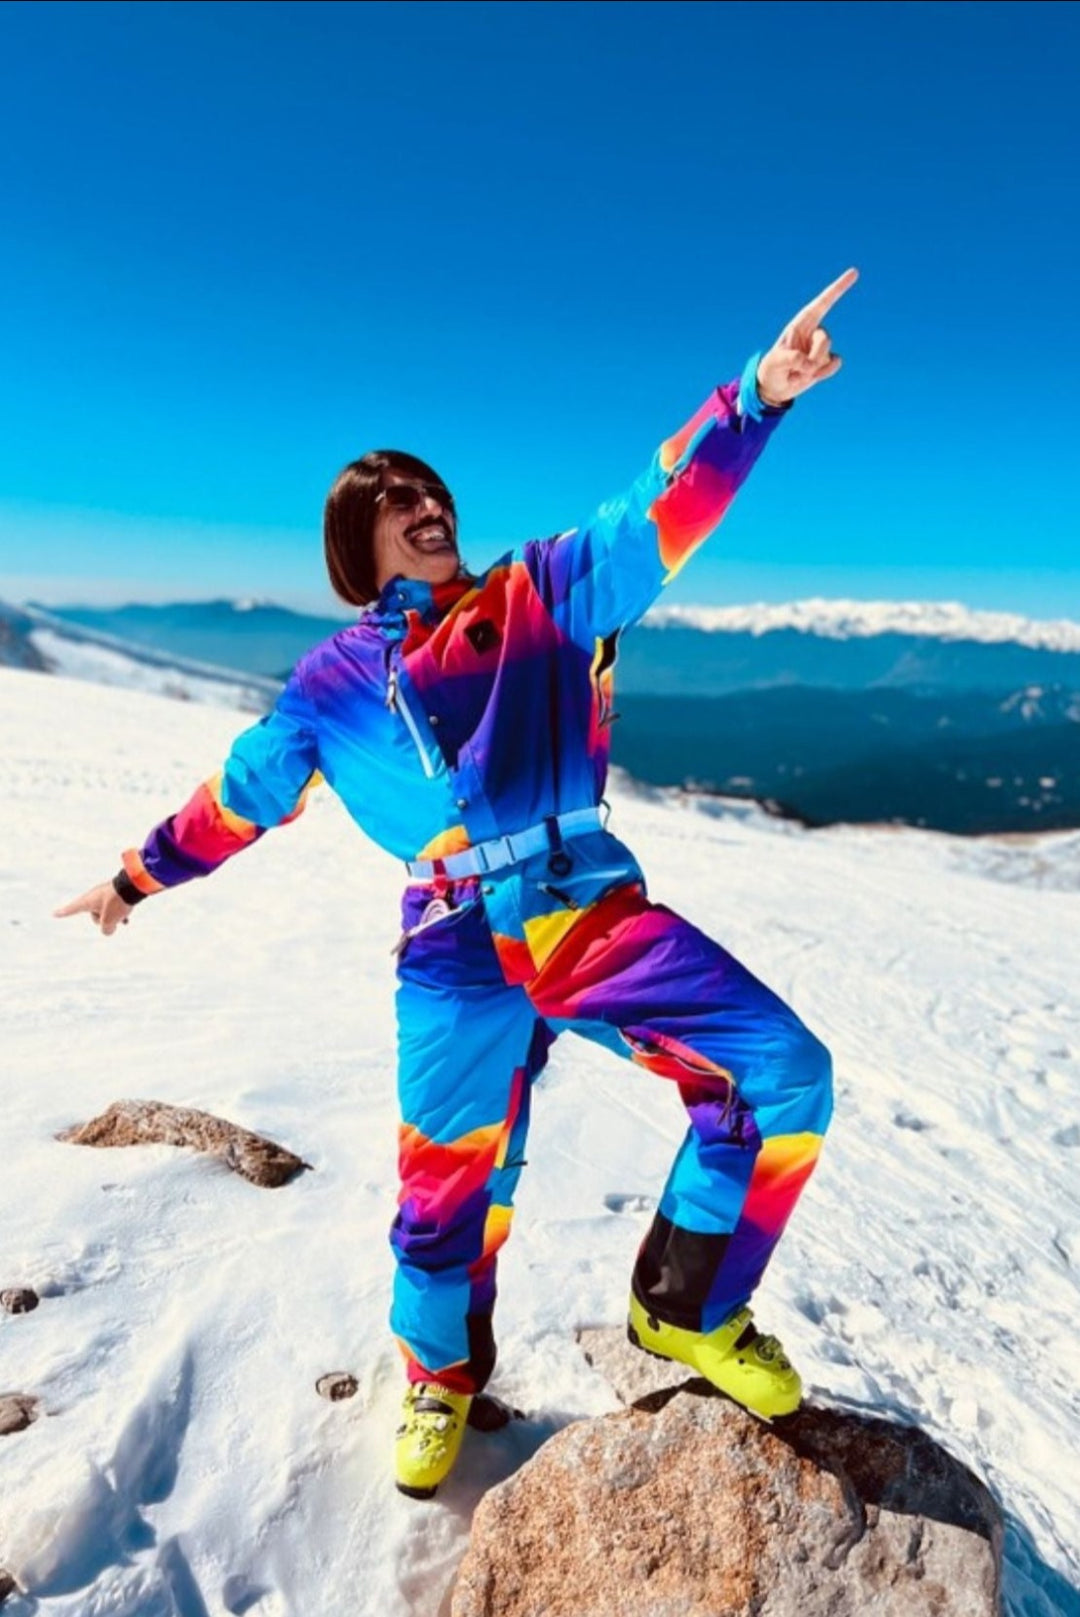 Combinaisons de ski pour hommes – OOSC Clothing - EU